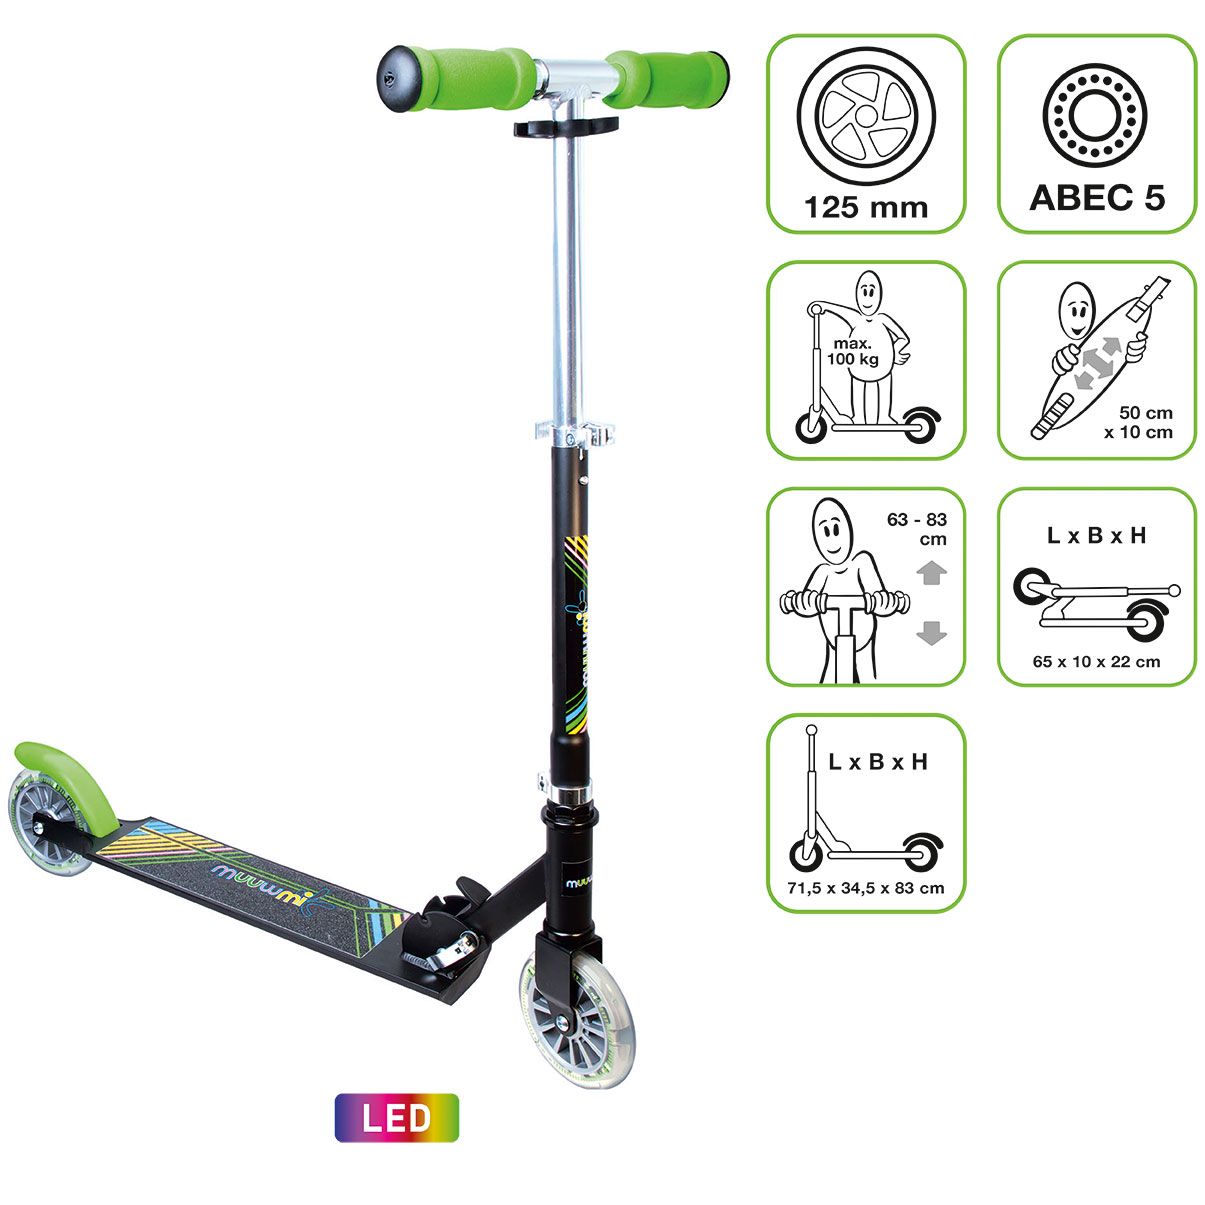 nero/verde colore con rotelle Authentic Sports & Toys GmbH muuwmi Alluminio Scooter Neon 125 mm 